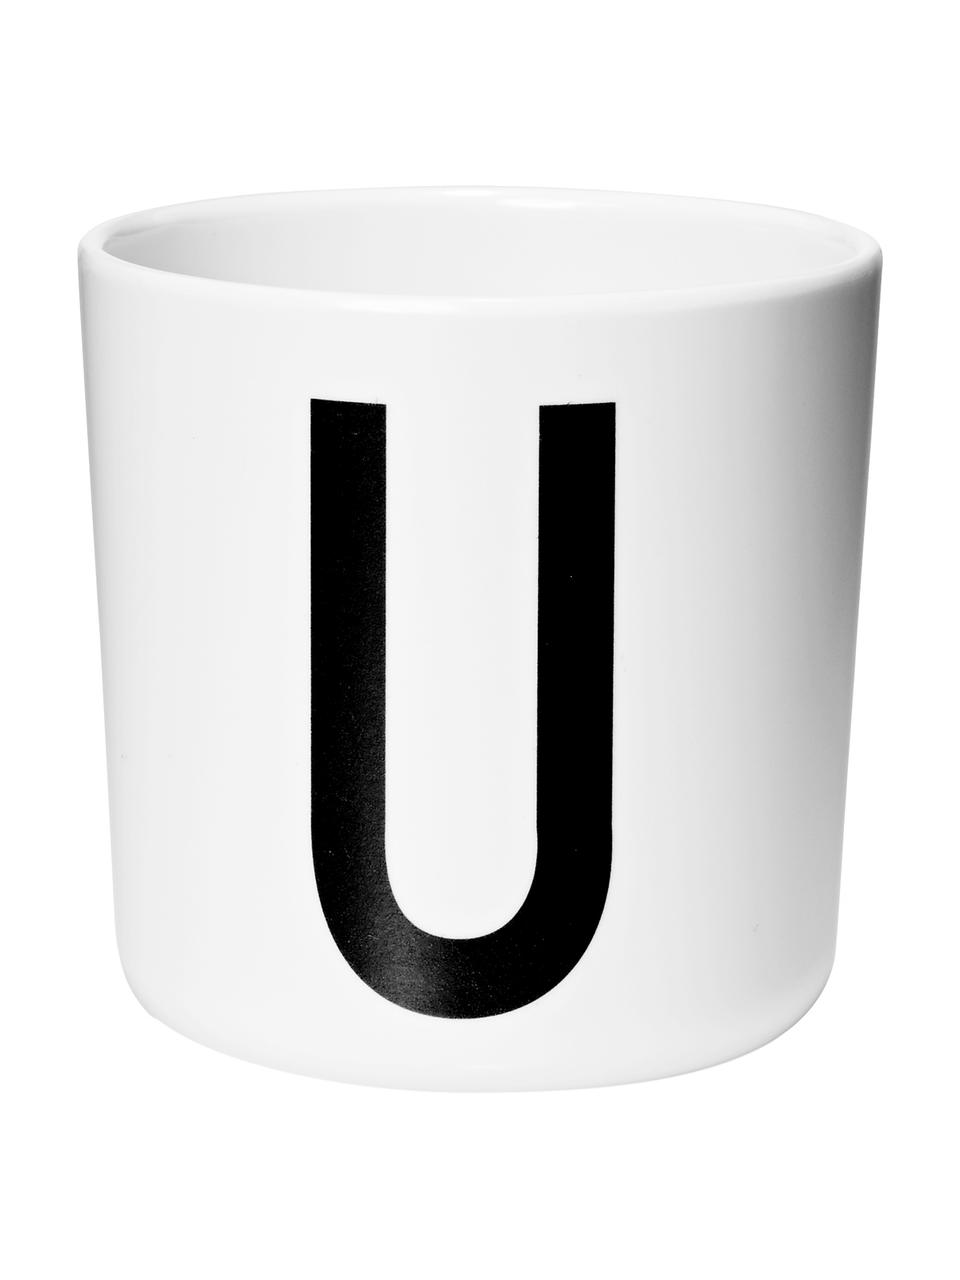 Mug pour enfant Alphabet (variantes de A à Z), Mélamine, Blanc, noir, Mug U